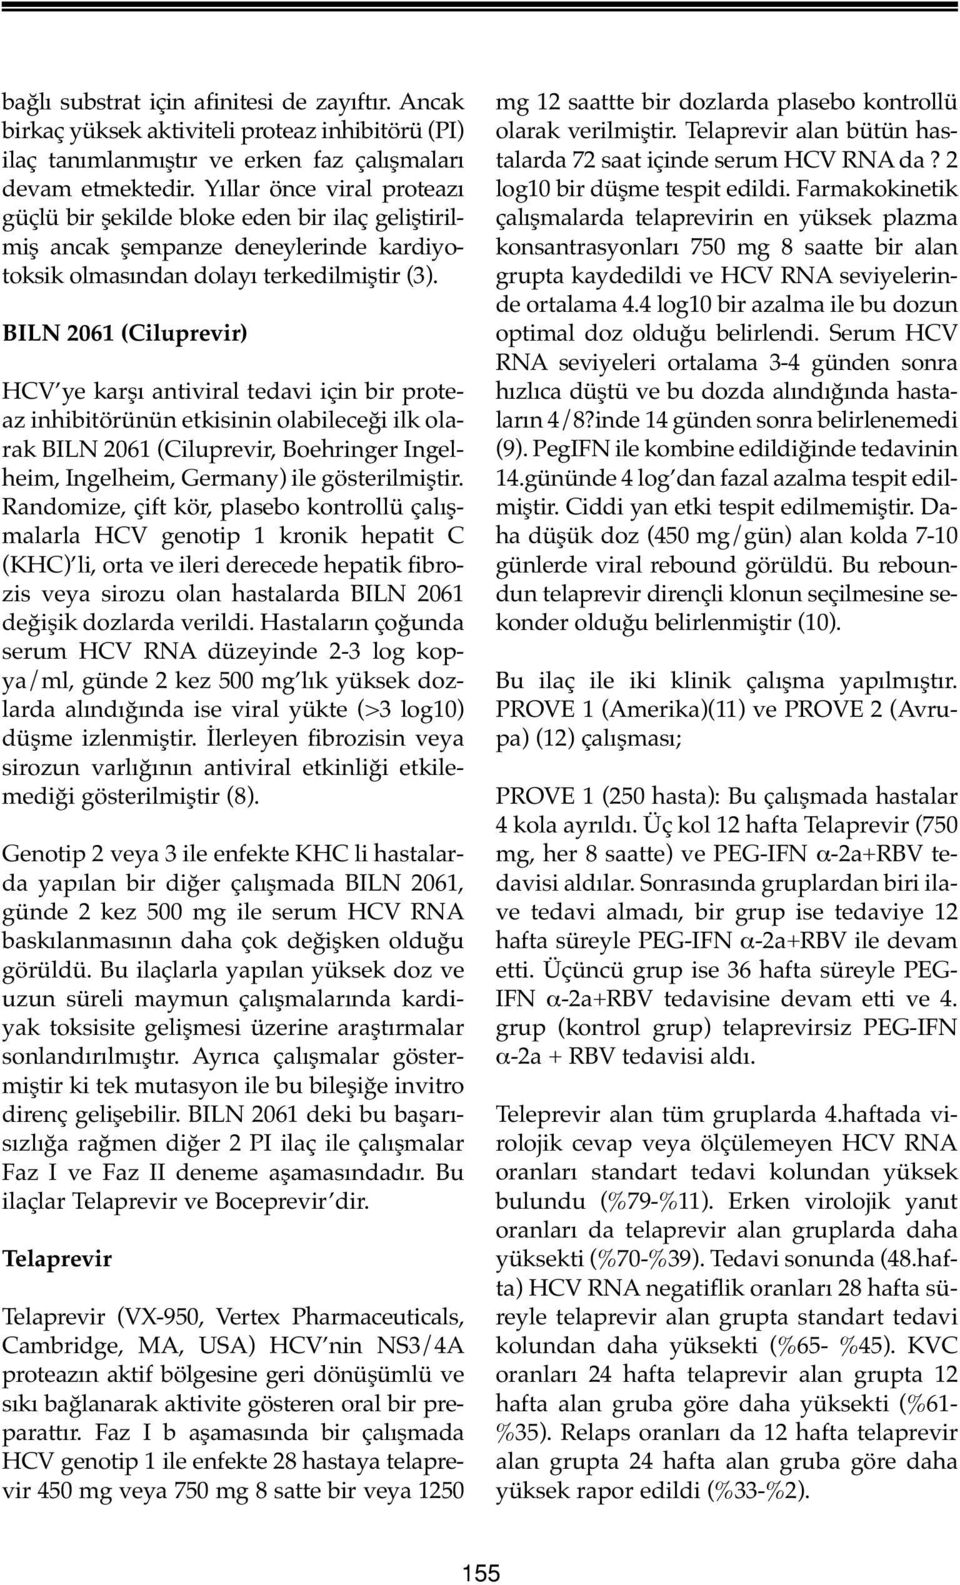 BILN 2061 (Ciluprevir) HCV ye karşı antiviral tedavi için bir proteaz inhibitörünün etkisinin olabileceği ilk olarak BILN 2061 (Ciluprevir, Boehringer Ingelheim, Ingelheim, Germany) ile